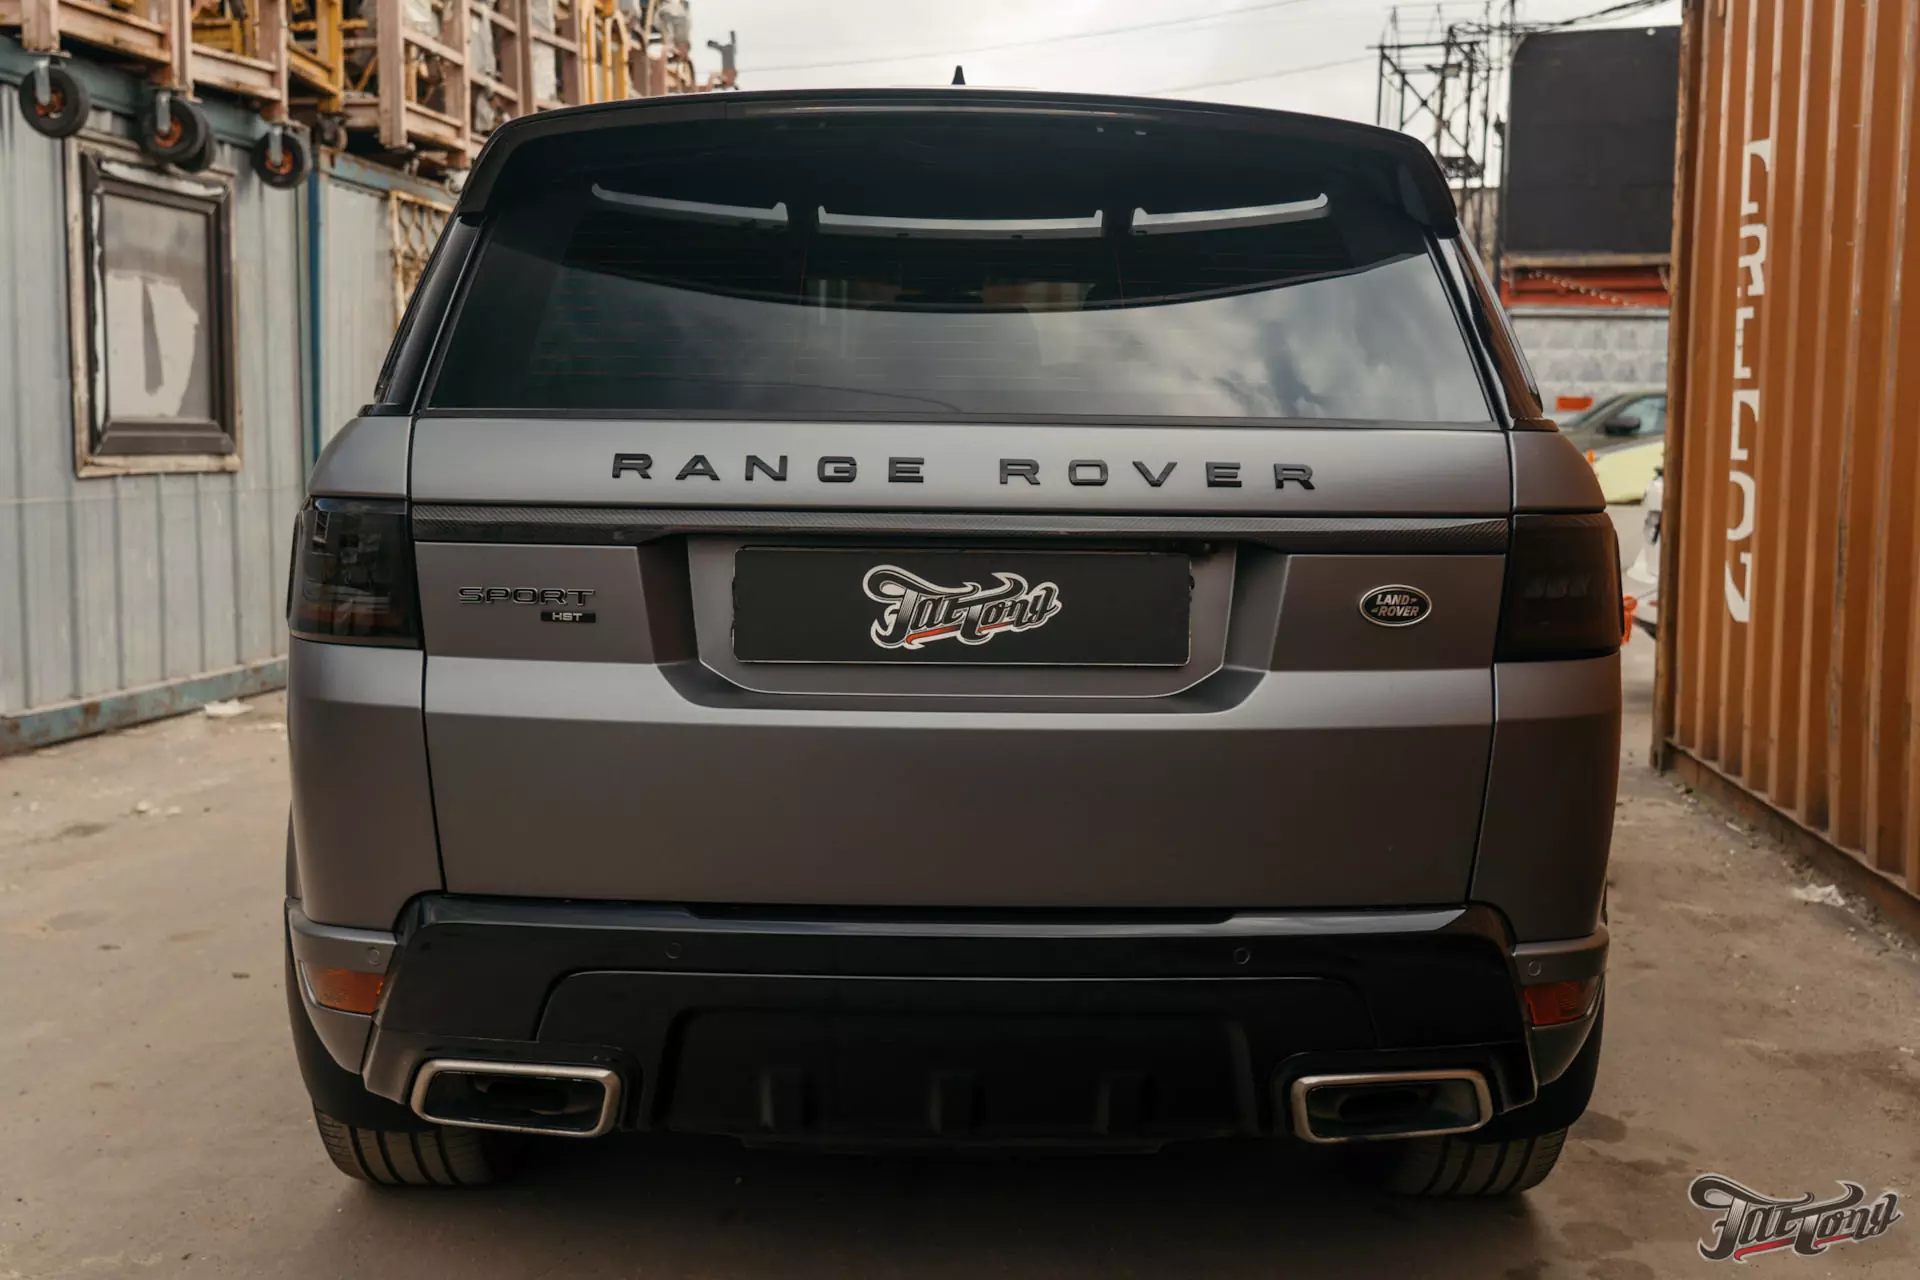 Range Rover. Оклейка в матовый винил от Bruxsafol